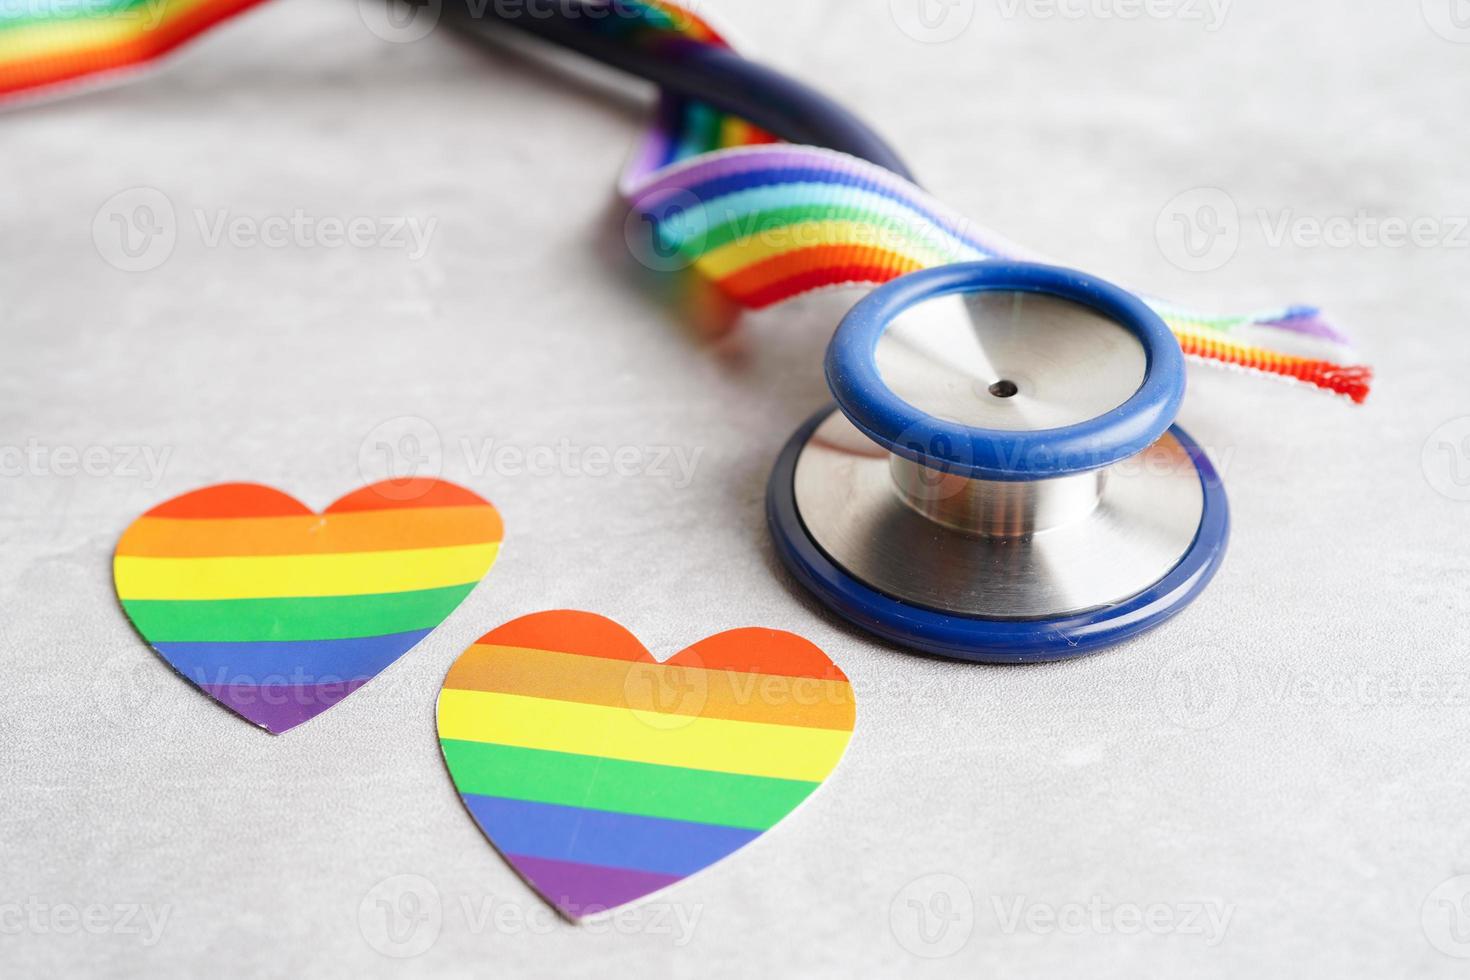 simbolo lgbt, stetoscopio con nastro arcobaleno, diritti e uguaglianza di genere, mese dell'orgoglio lgbt a giugno. foto